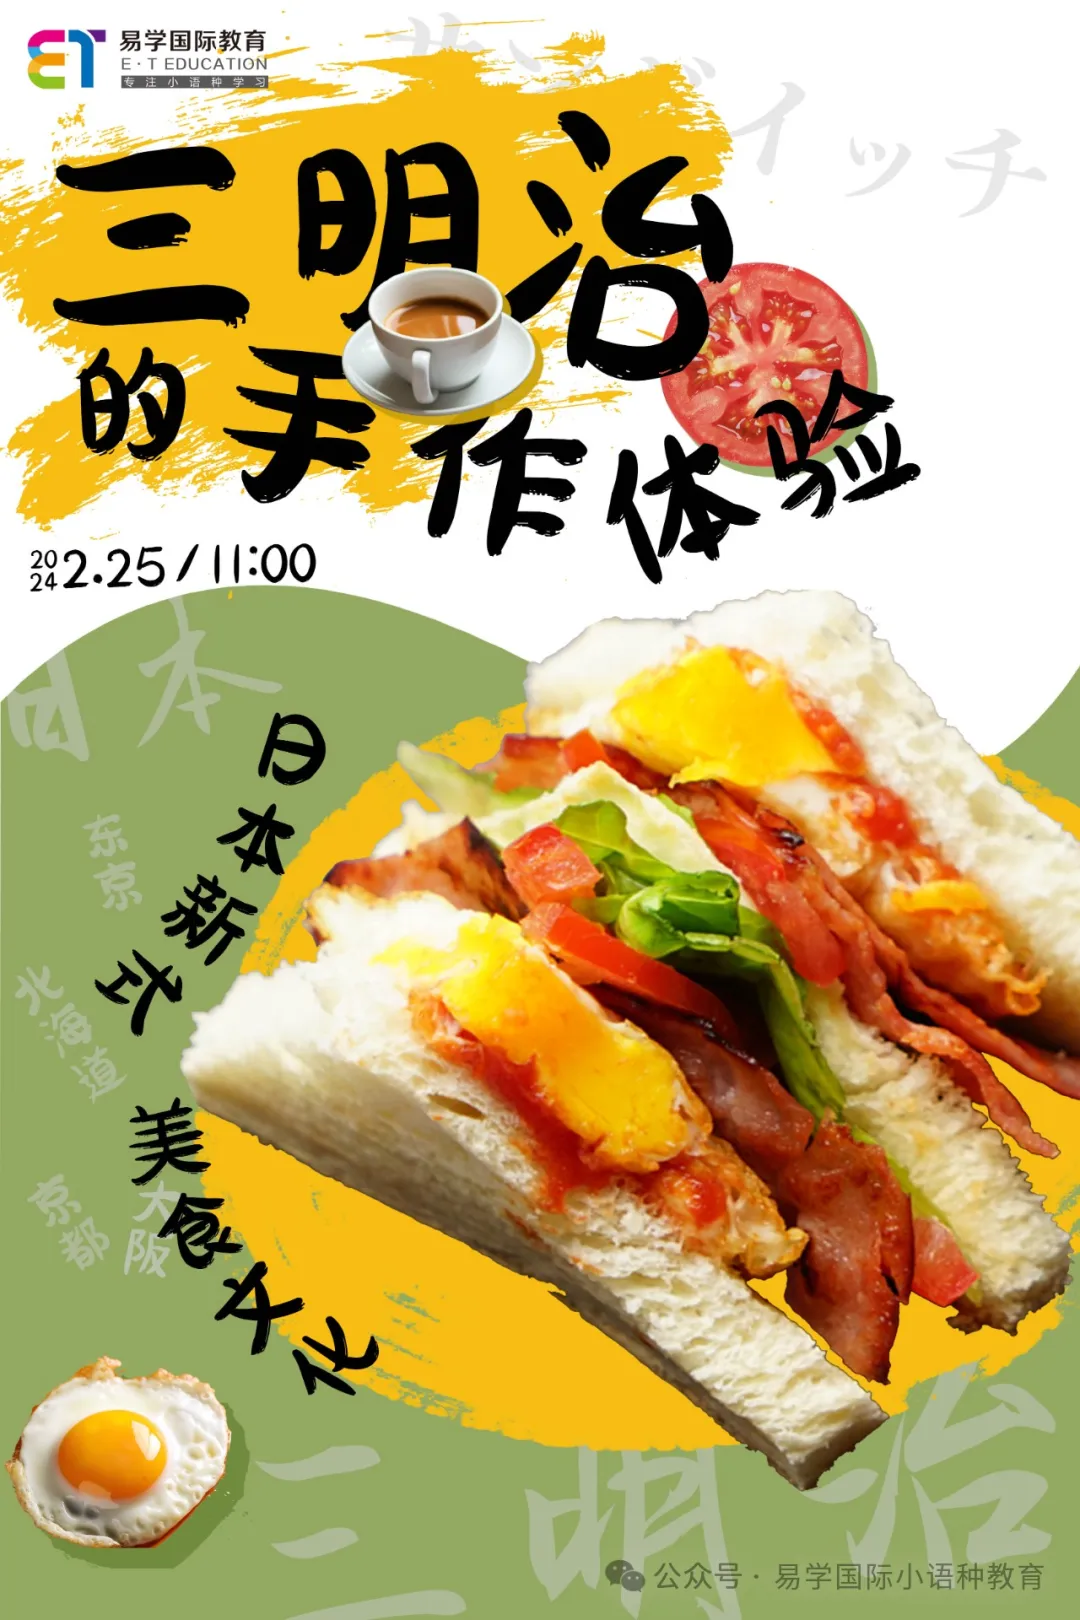 西安易学日本美食文化|三明治手作体验活动，带你走进“舌尖上の日本”